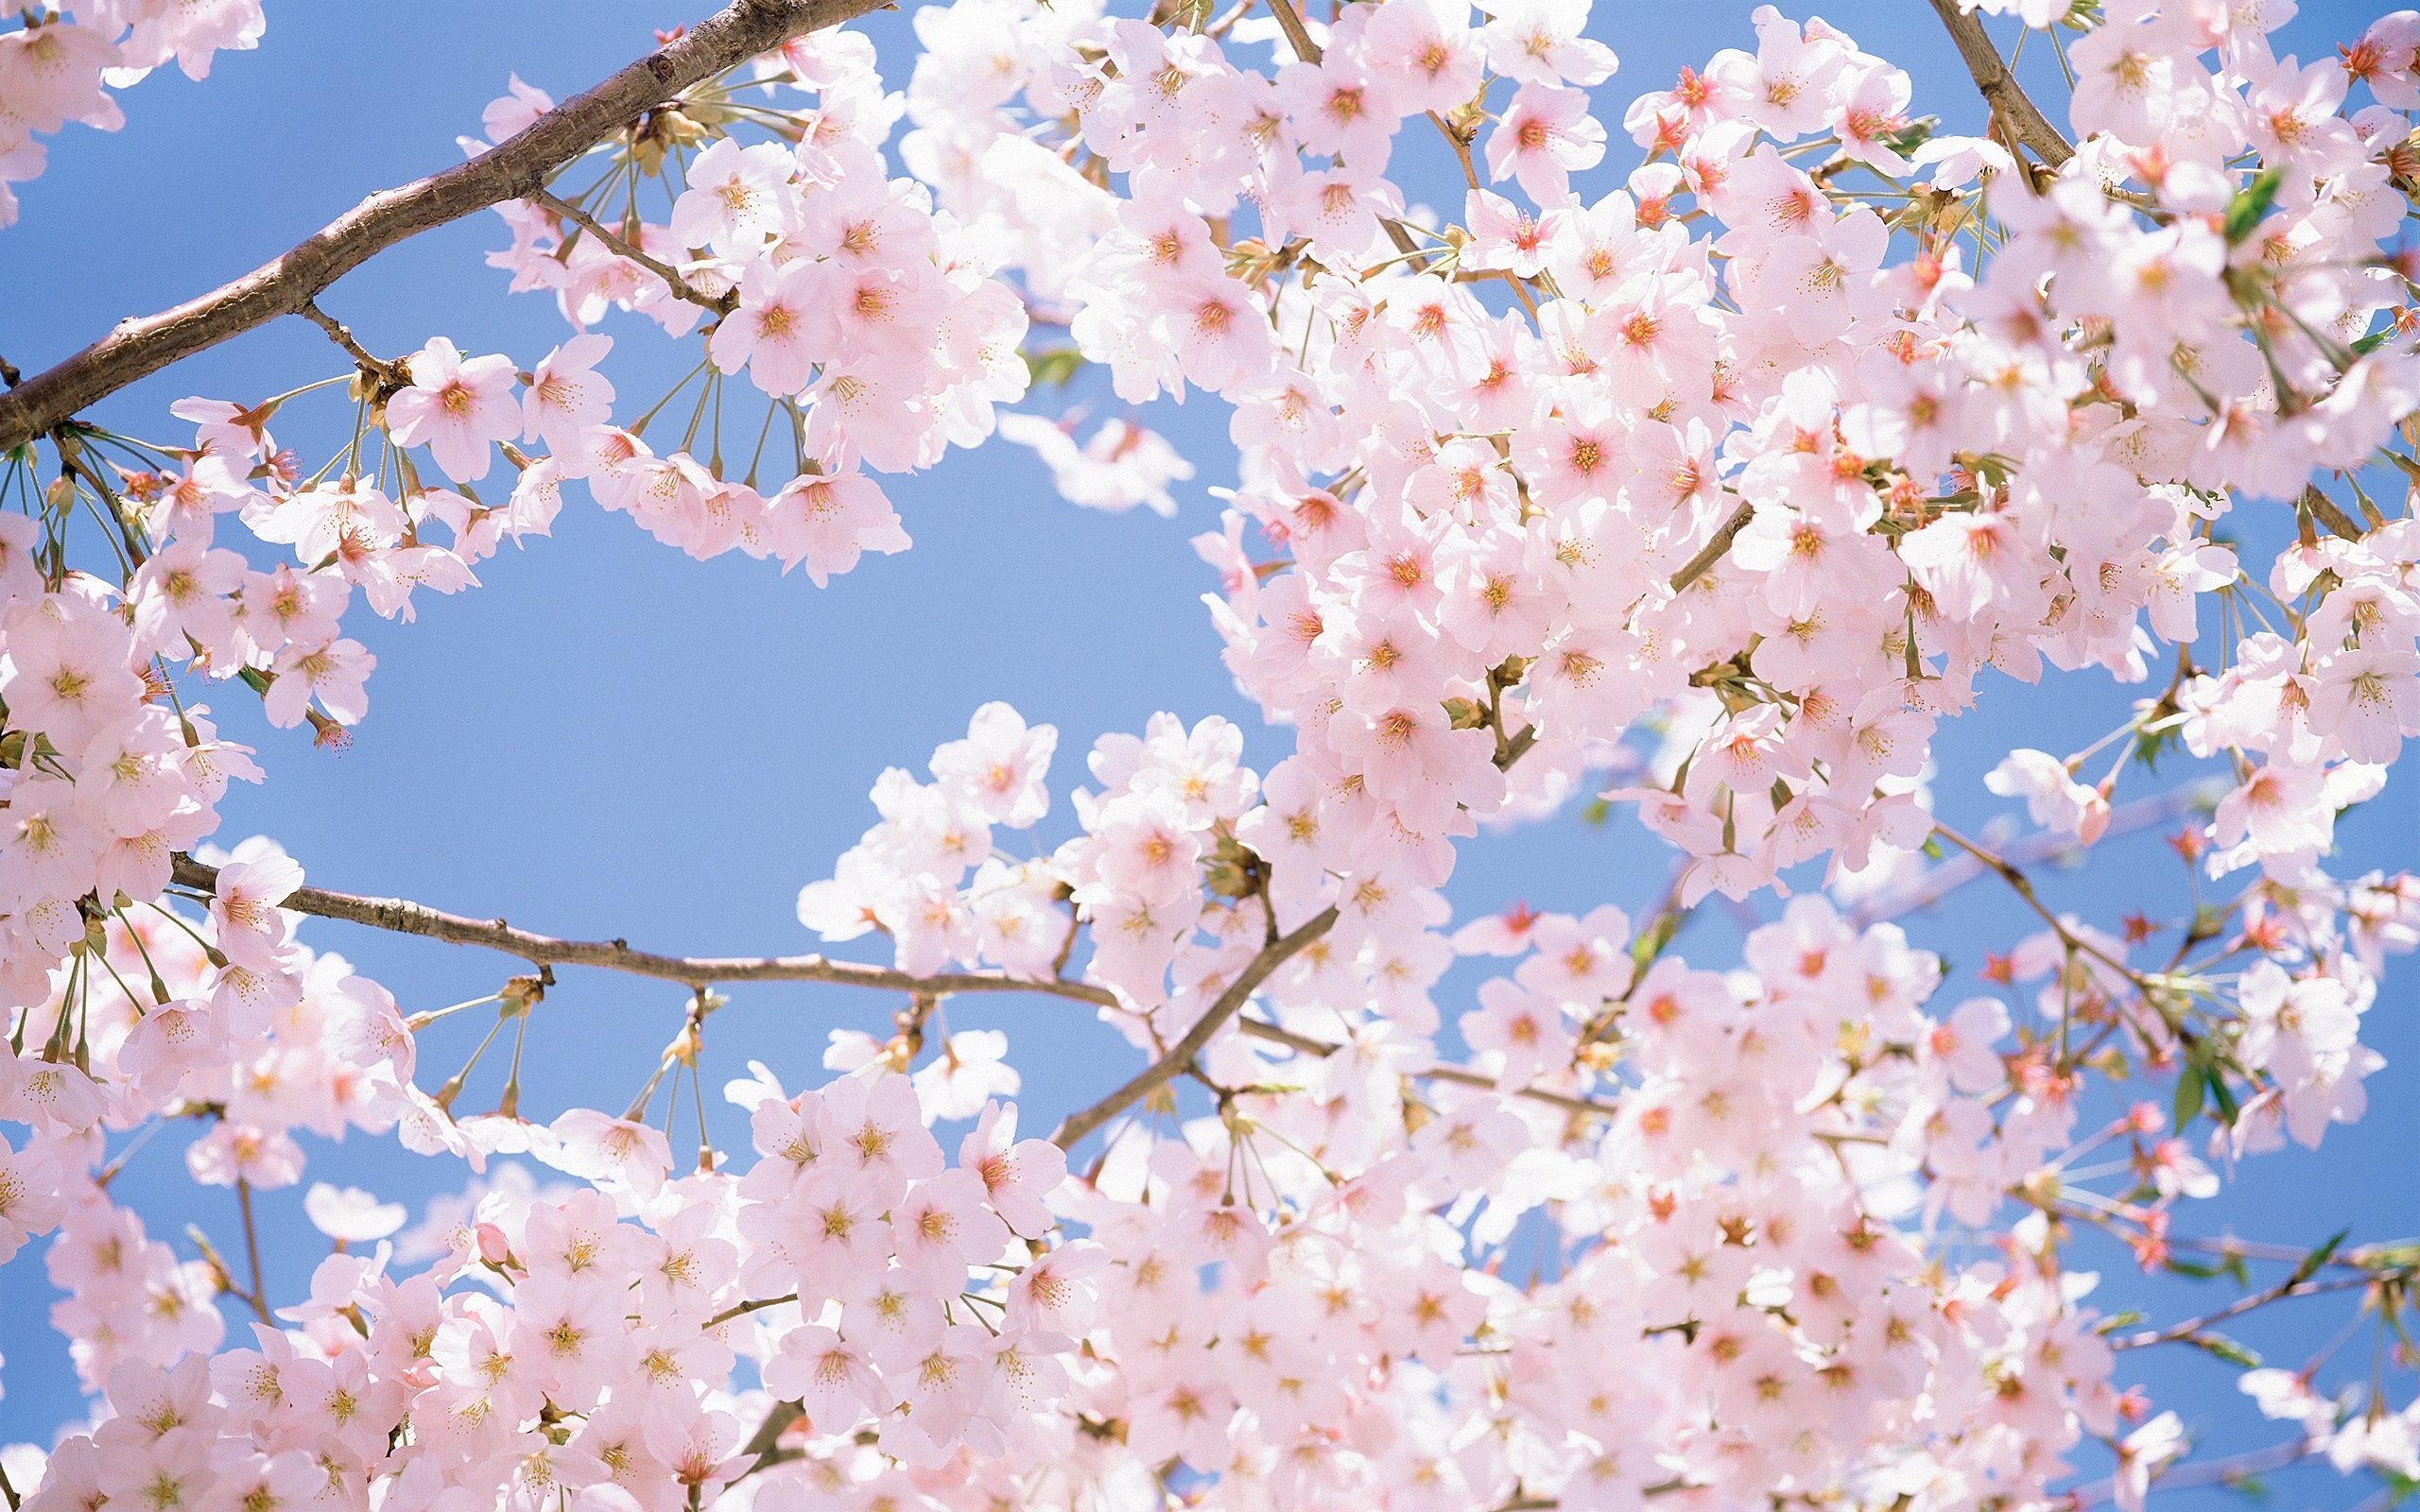 Cute Cherry Blossom Wallpaper Desktop - wallpaper.